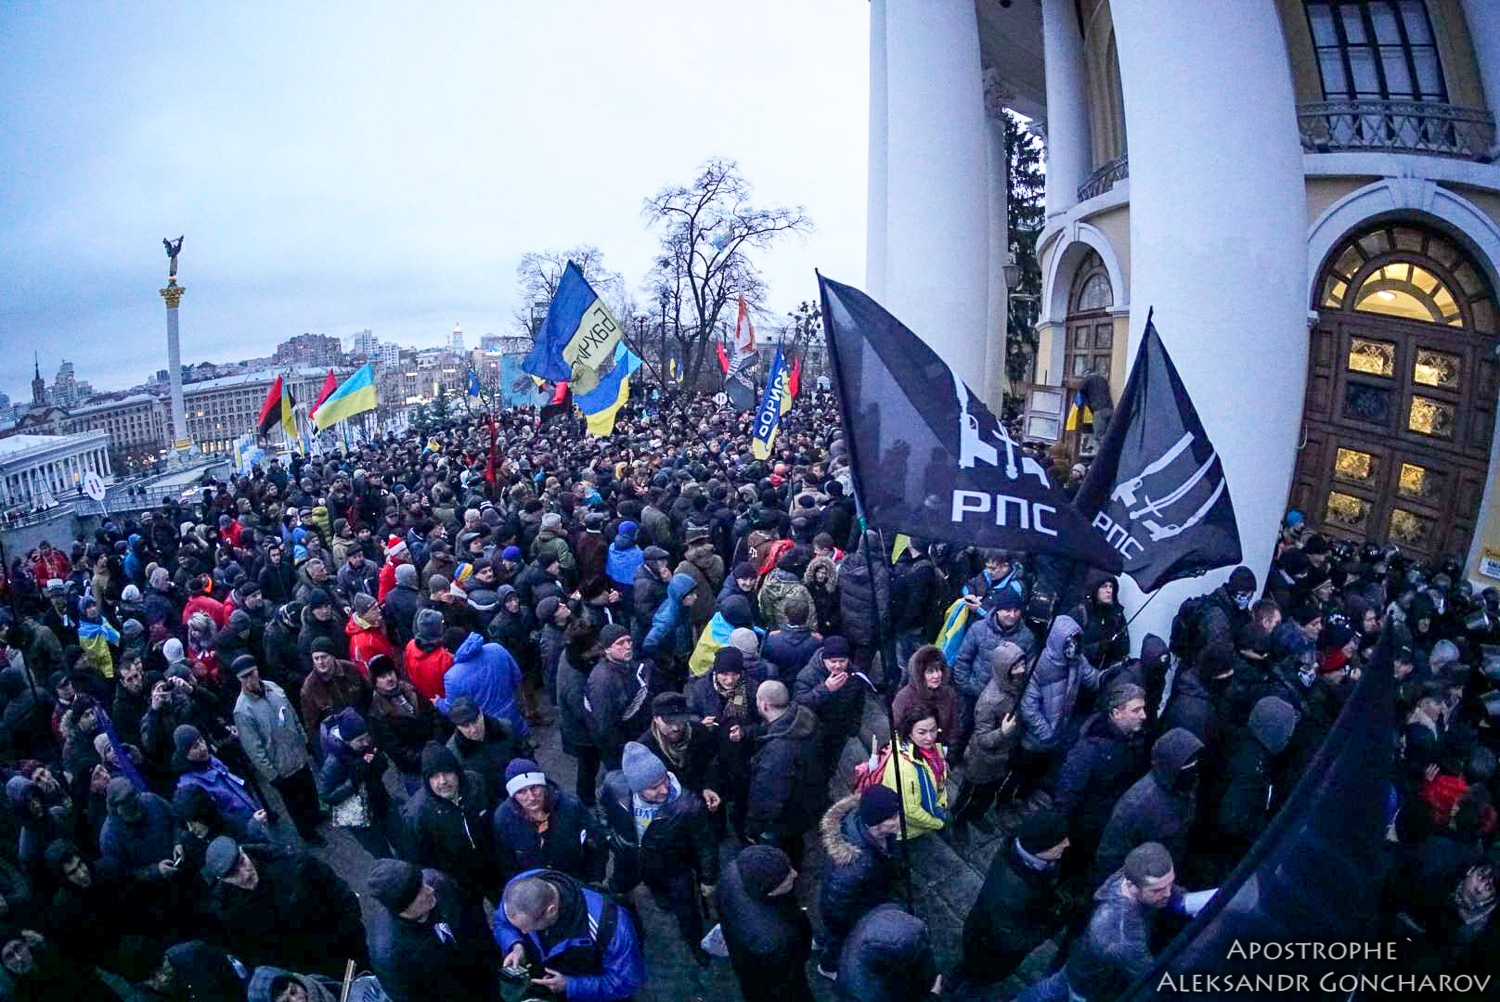 "Революция не работает по сценарию", - Бутусов считает, что активисты Саакашвили нанесли ущерб идеям, озвученным на митинге, и дискредитировали сам митинг